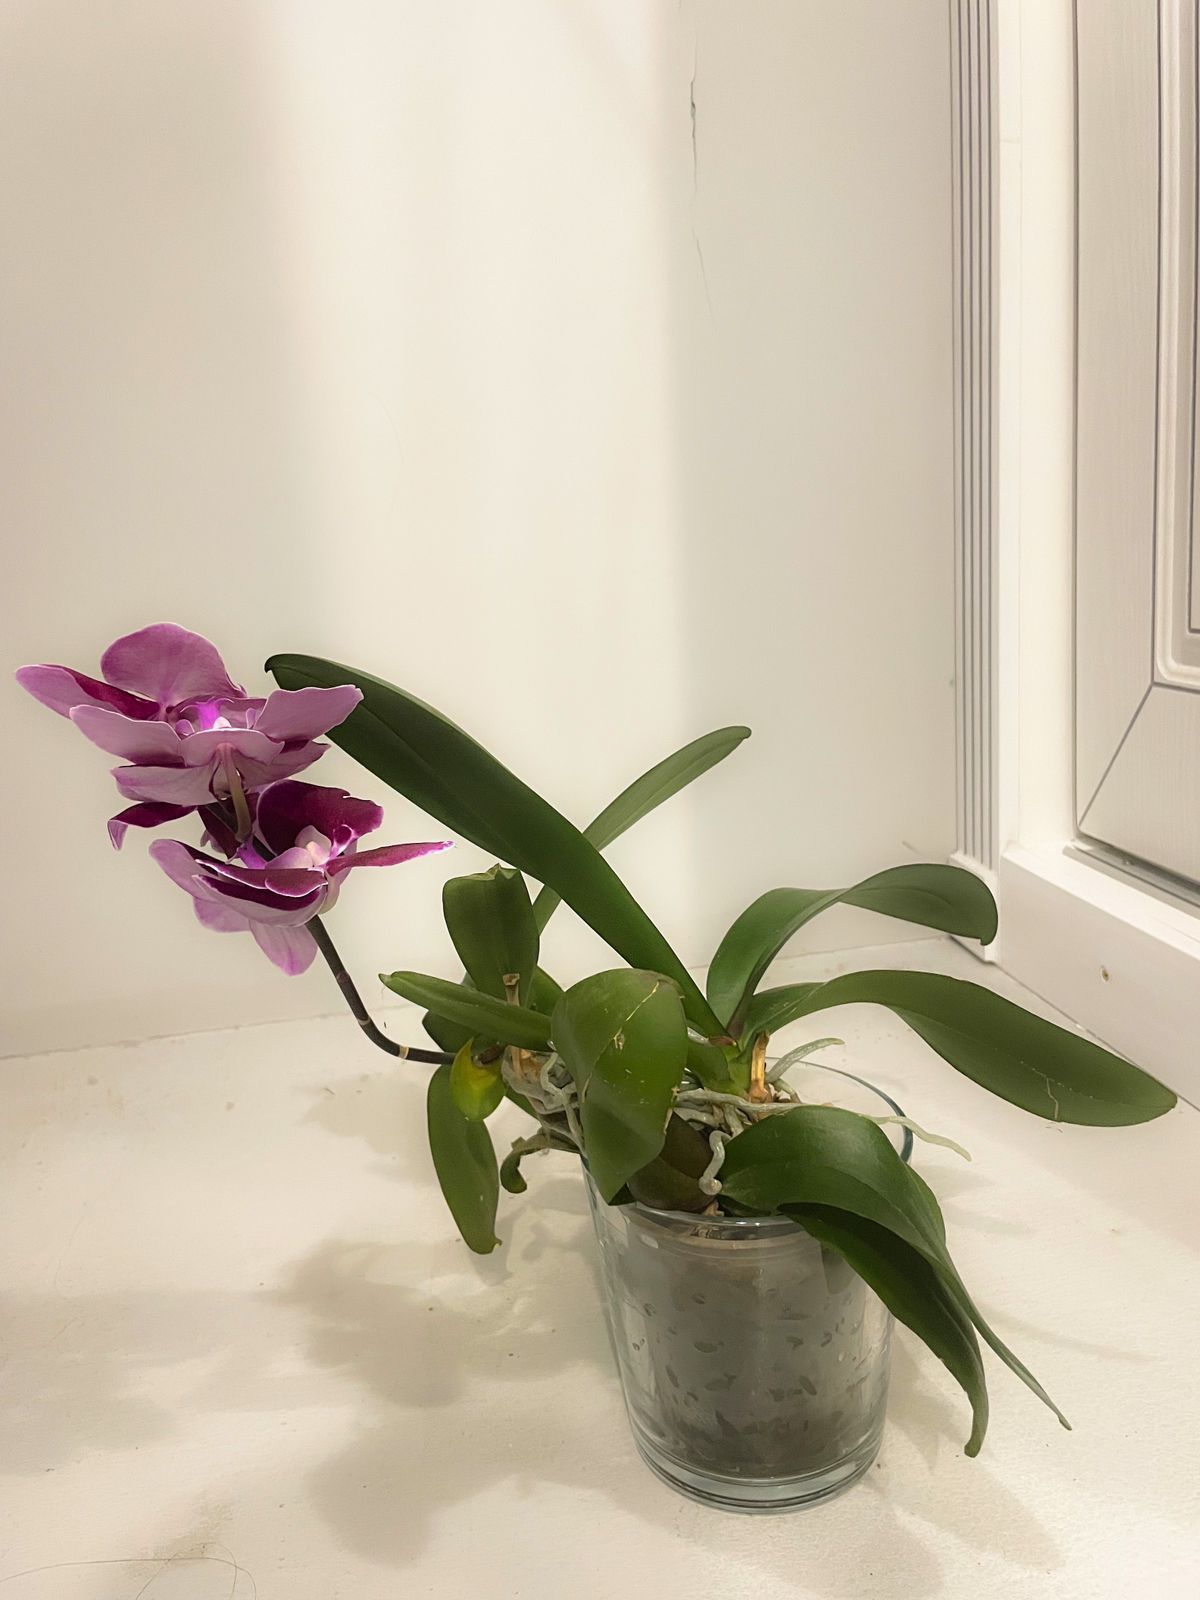 Продается Орхидея Фаленопсис